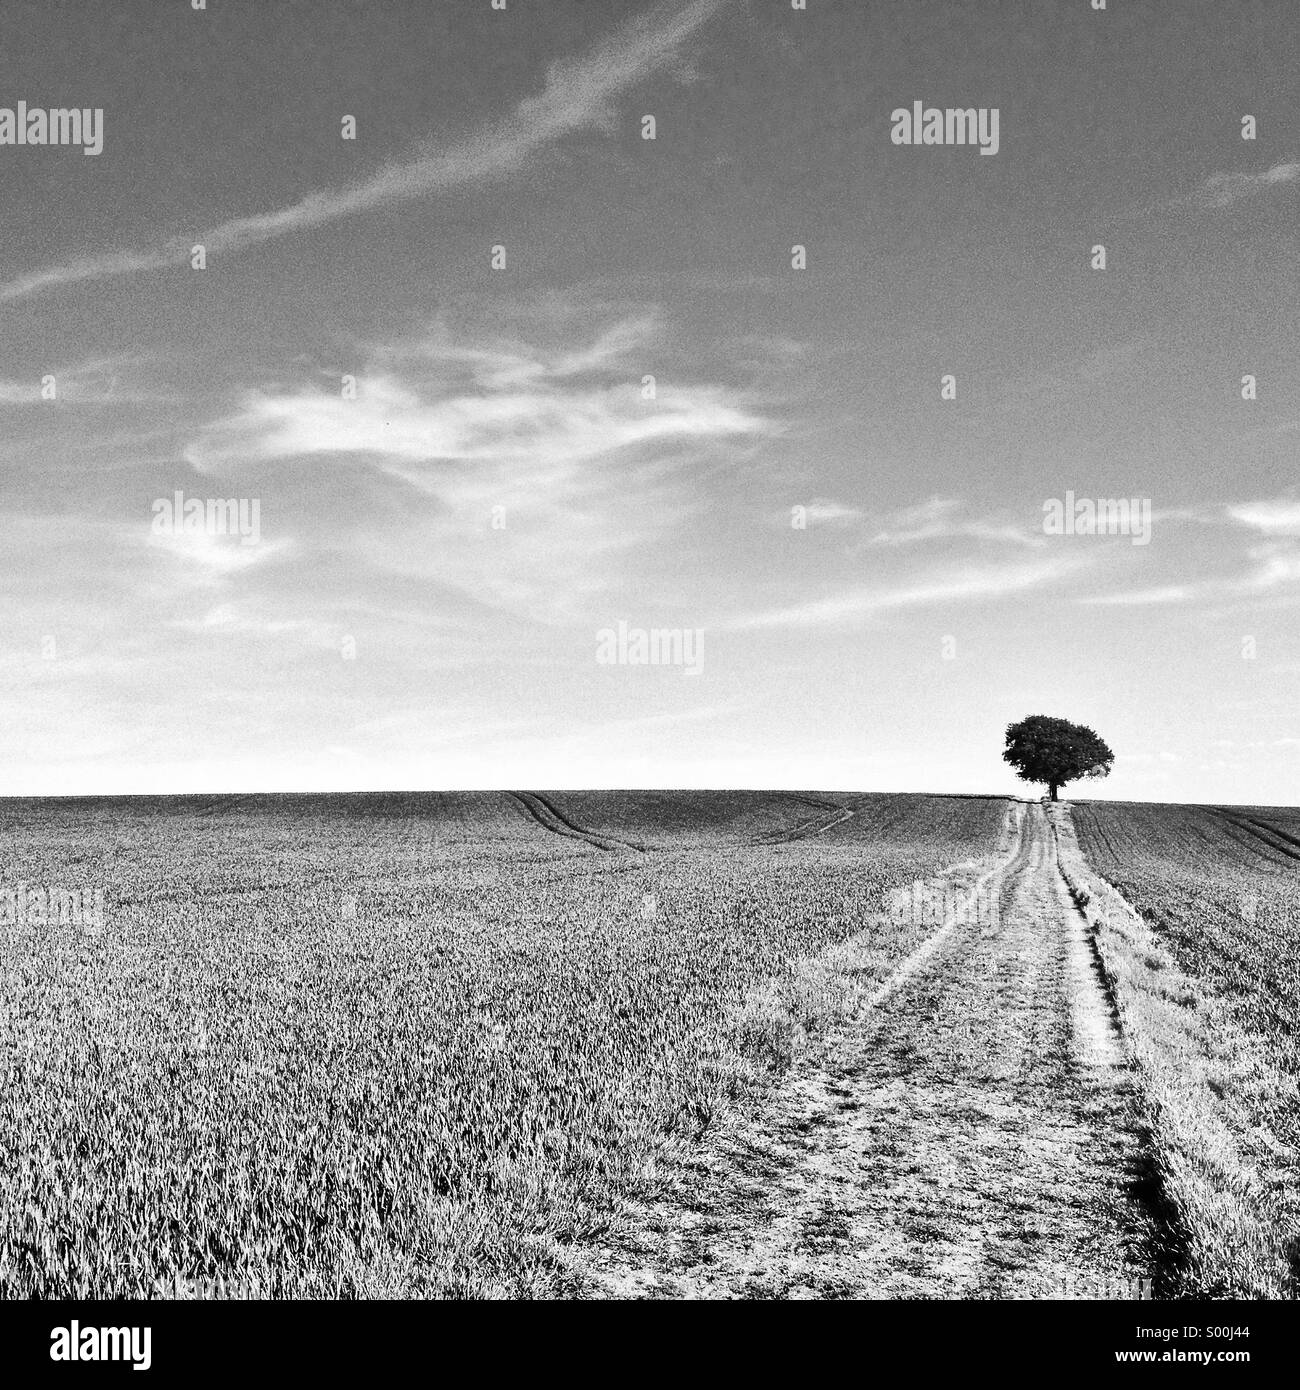 Eine schwarze und weiße Landschaft zeigt einen einsamen Baum in einem englischen Feld Stockfoto